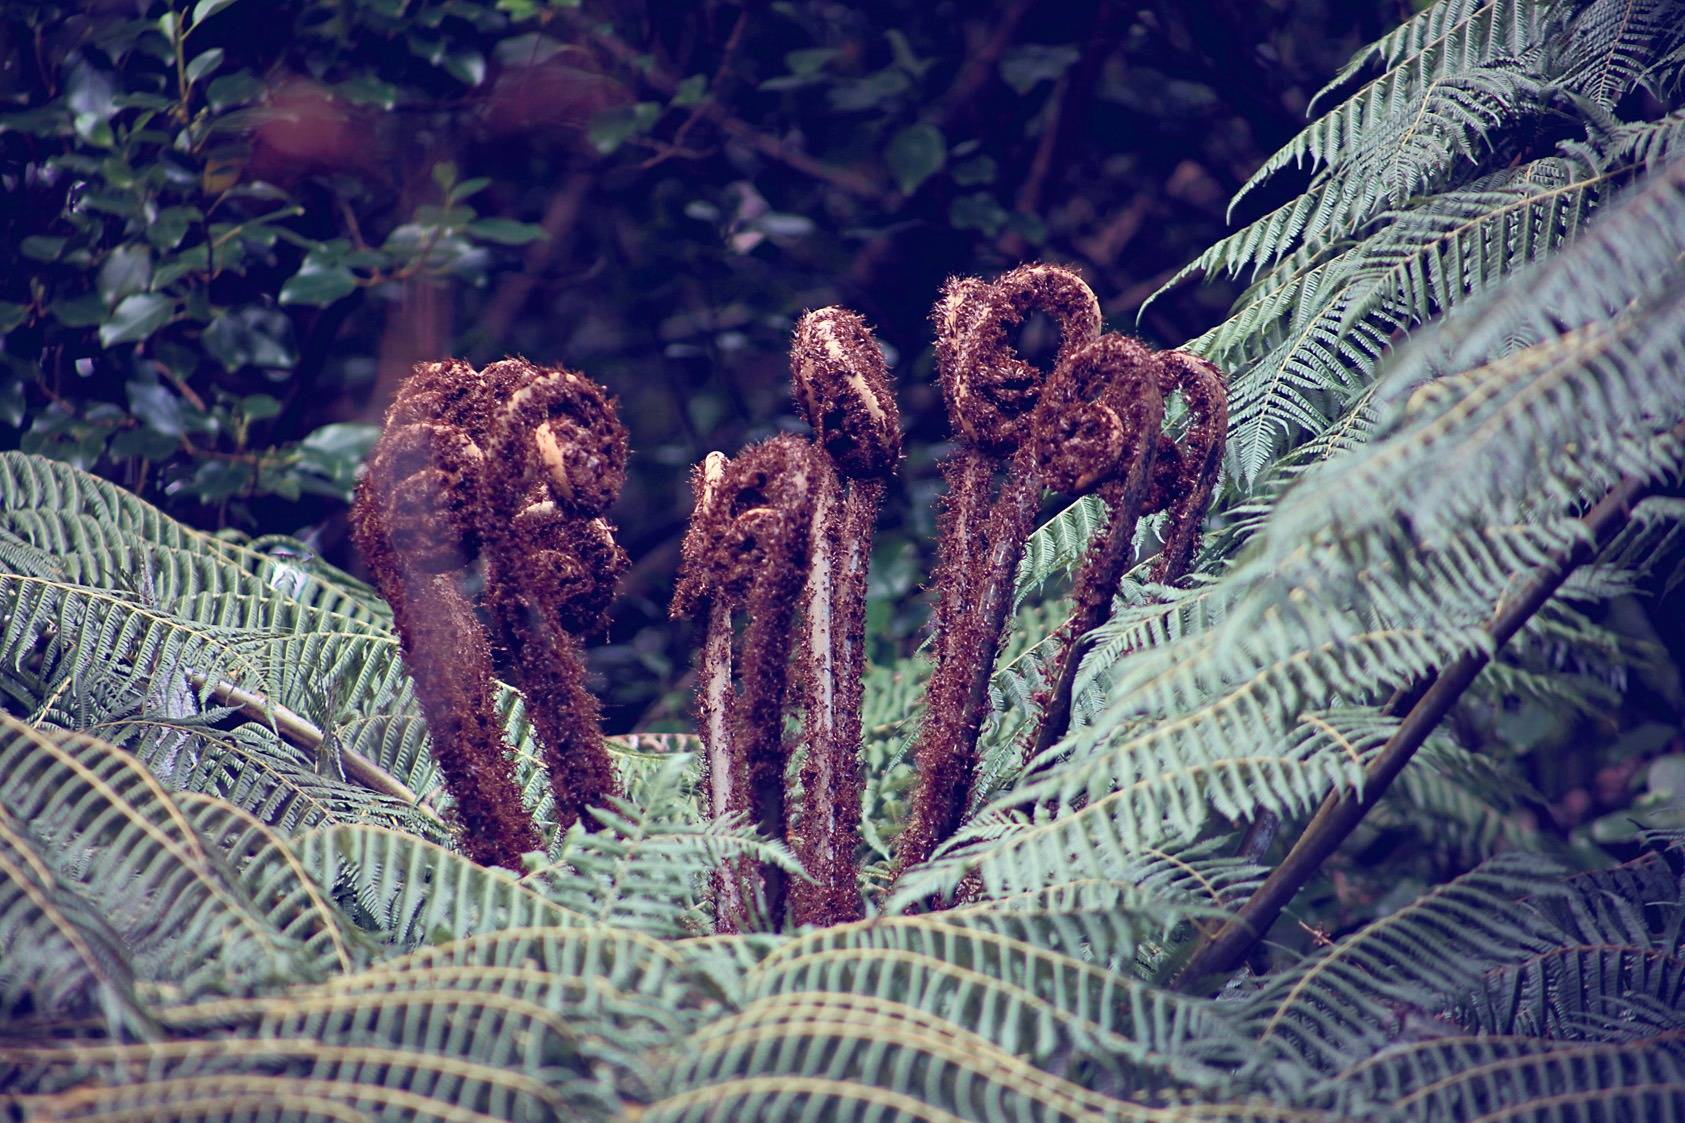 Cyathea Dealbata: the New Zealand silver tree fern. OPW. 